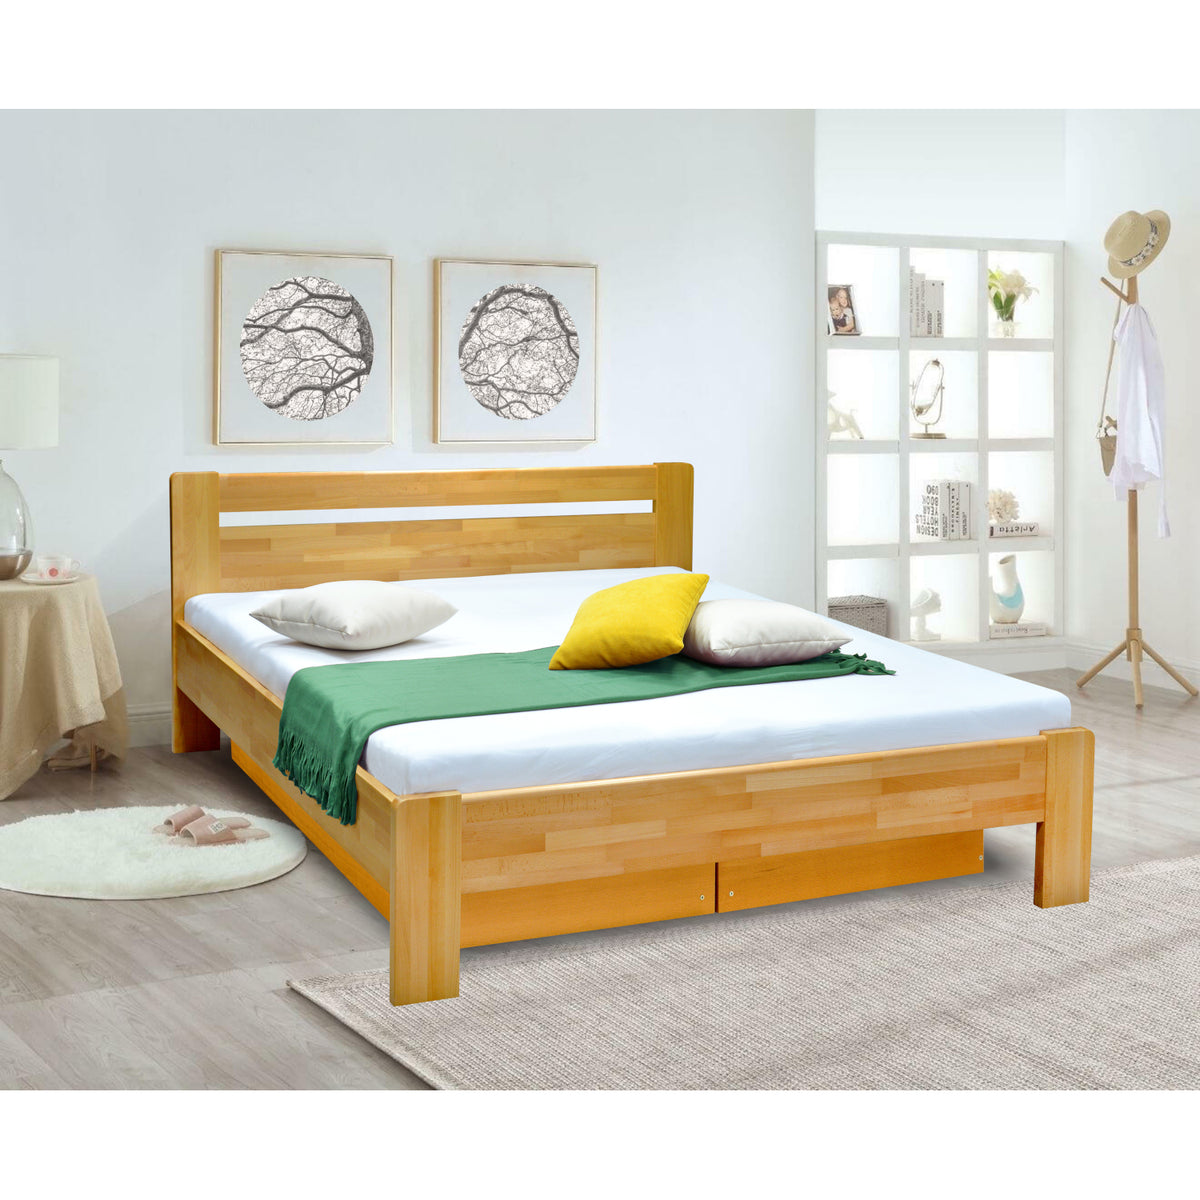 Masivní postel Maribo 2, 180x200, vč. roštu, bez matr., sv.ořech